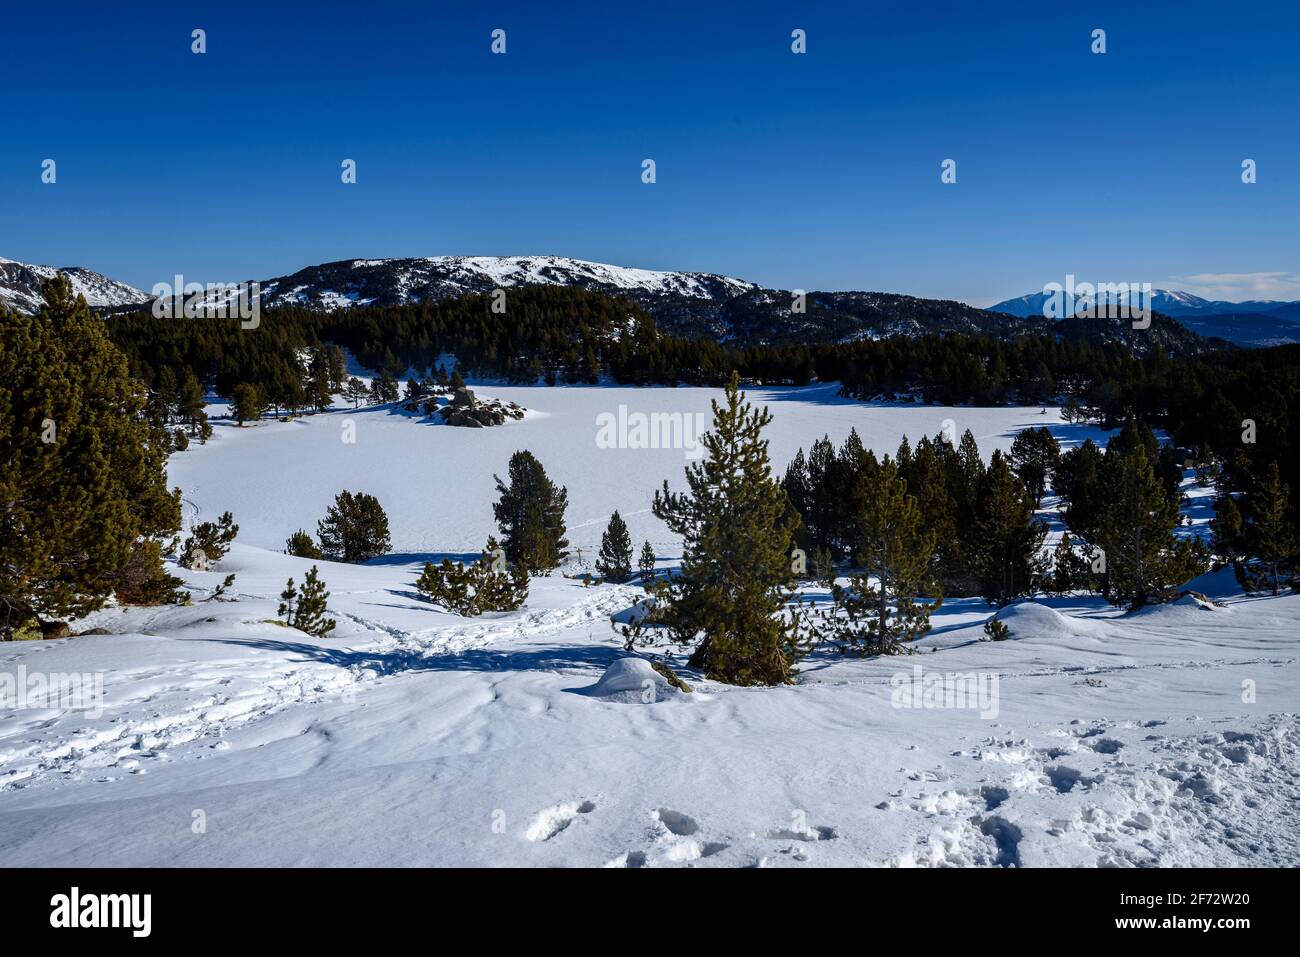 Snow covered Carlit lakes in winter (Pyrenees Orientales, Occitanie, France) ESP: Estanys del Carlit nevados en invierno, Pirineos Orientales, Francia Stock Photo